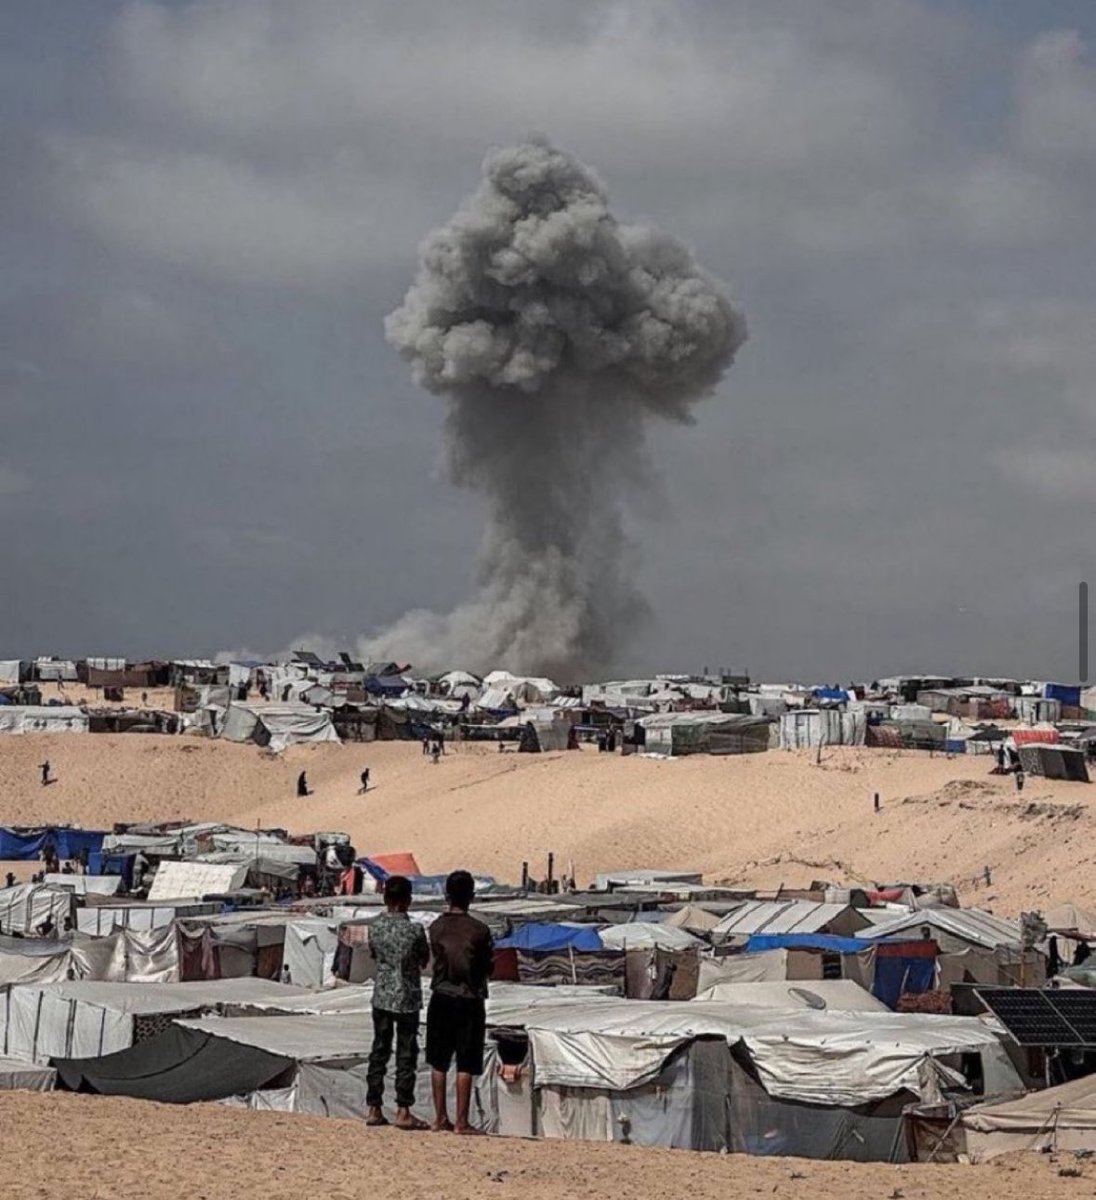 #Gaza #Israel #Völkermord Heute früh hat Israels Armee erneut zivile Zeltlager in Rafah/Gaza an der ägyptischen Grenze mit Raketen und Brandmunition angegriffen (MazharKhan). Das ist Völkermord in Reinkultur! Netanyahu ab ins Gefängnis. Lebenslang.